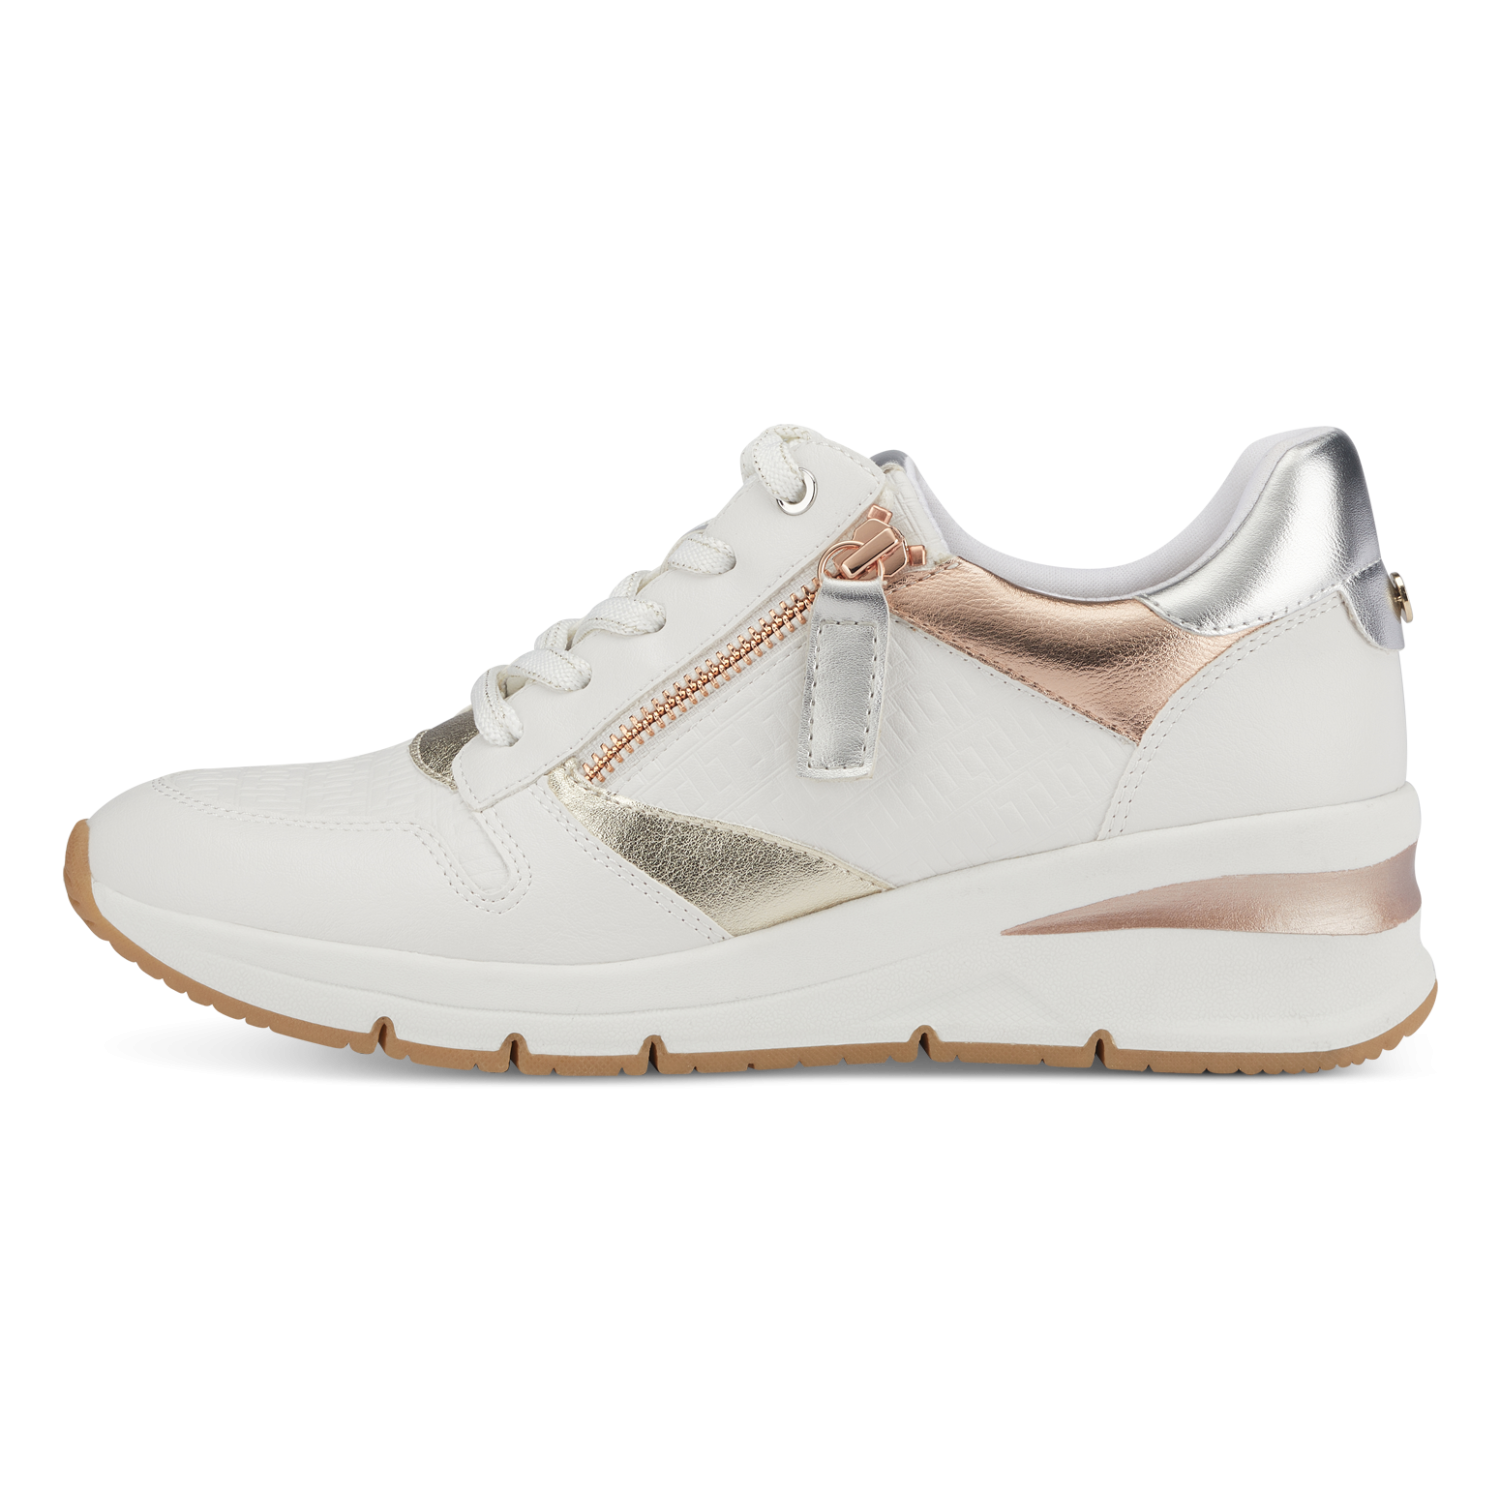 Tamaris sneakers - white / rose 1-1-23702-20 157 - - zjoos-hjoerring.dk